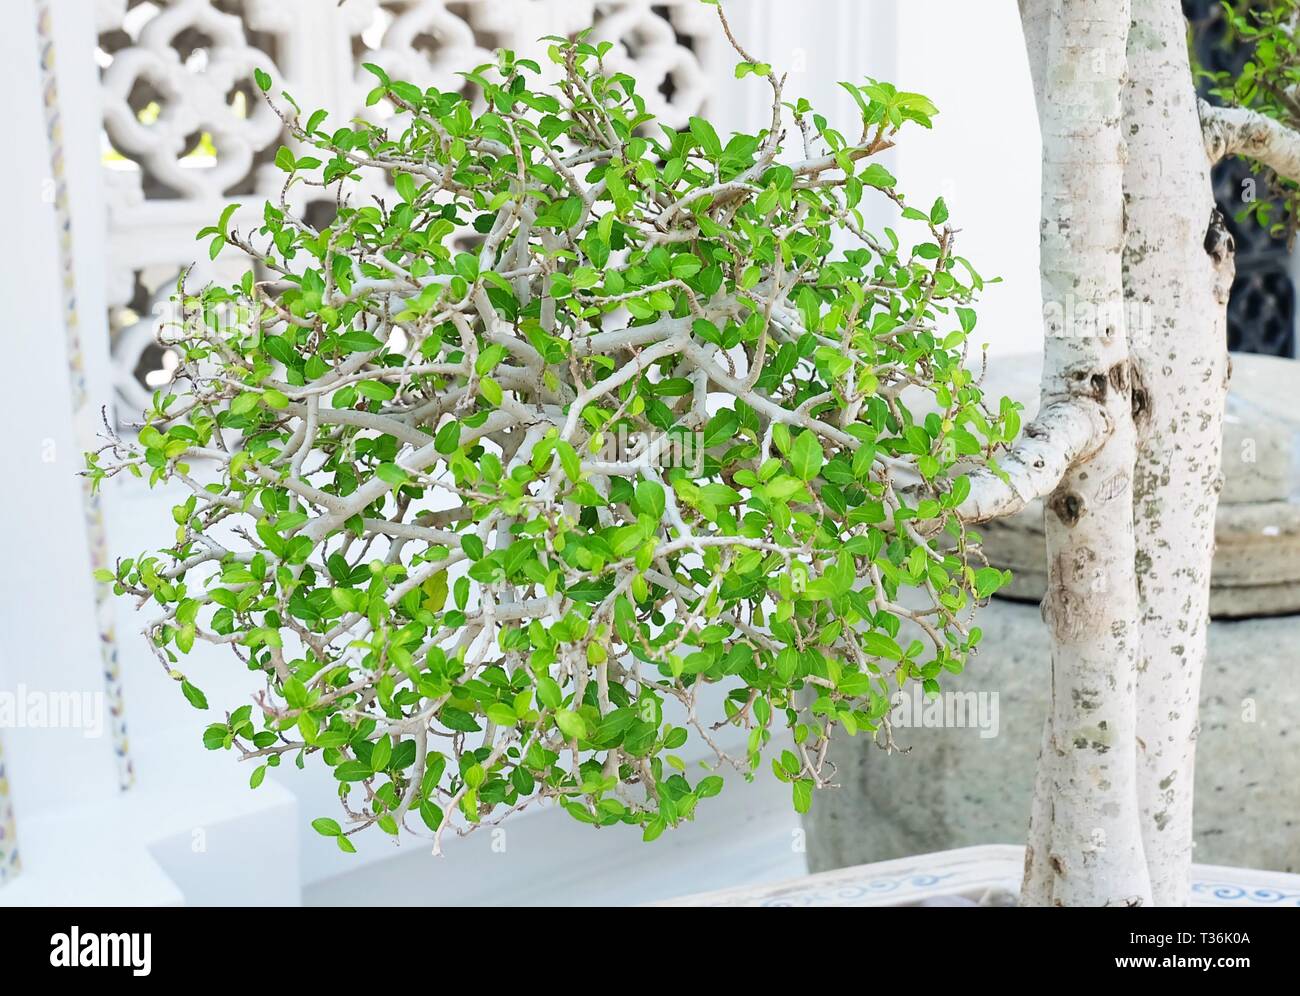 Houseplant, beau vert frais Streblus Asper Siamois ou bois Bonsaï dans un pot pour la décoration du bâtiment. Banque D'Images